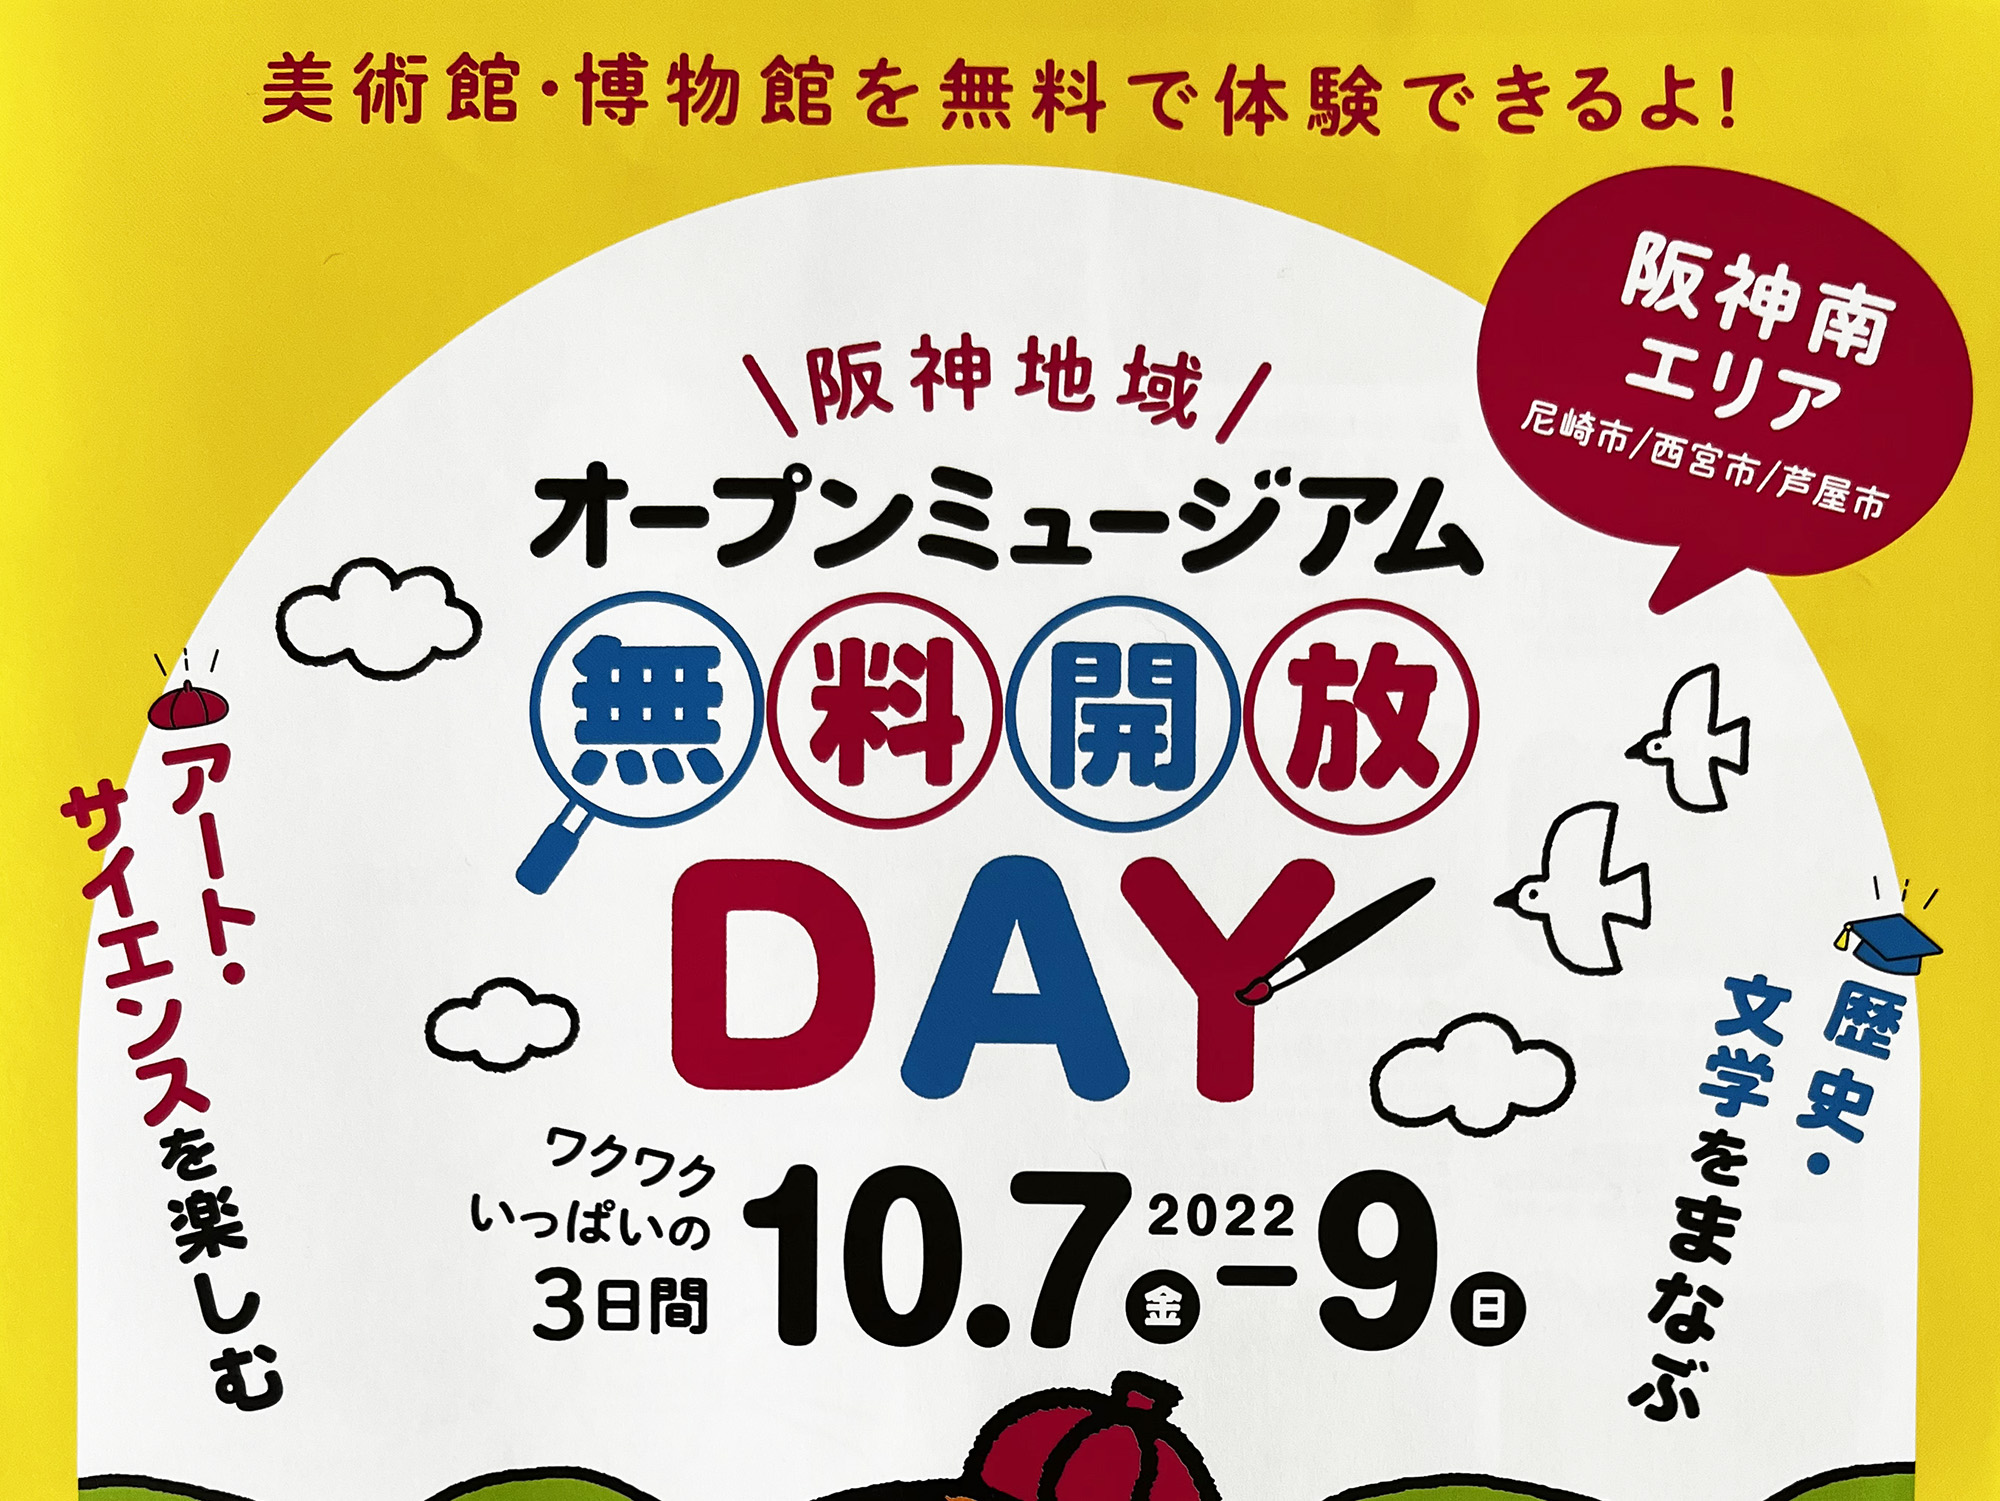 2022年10月7日～9日 阪神地域オープンミュージアム 無料開放DAY